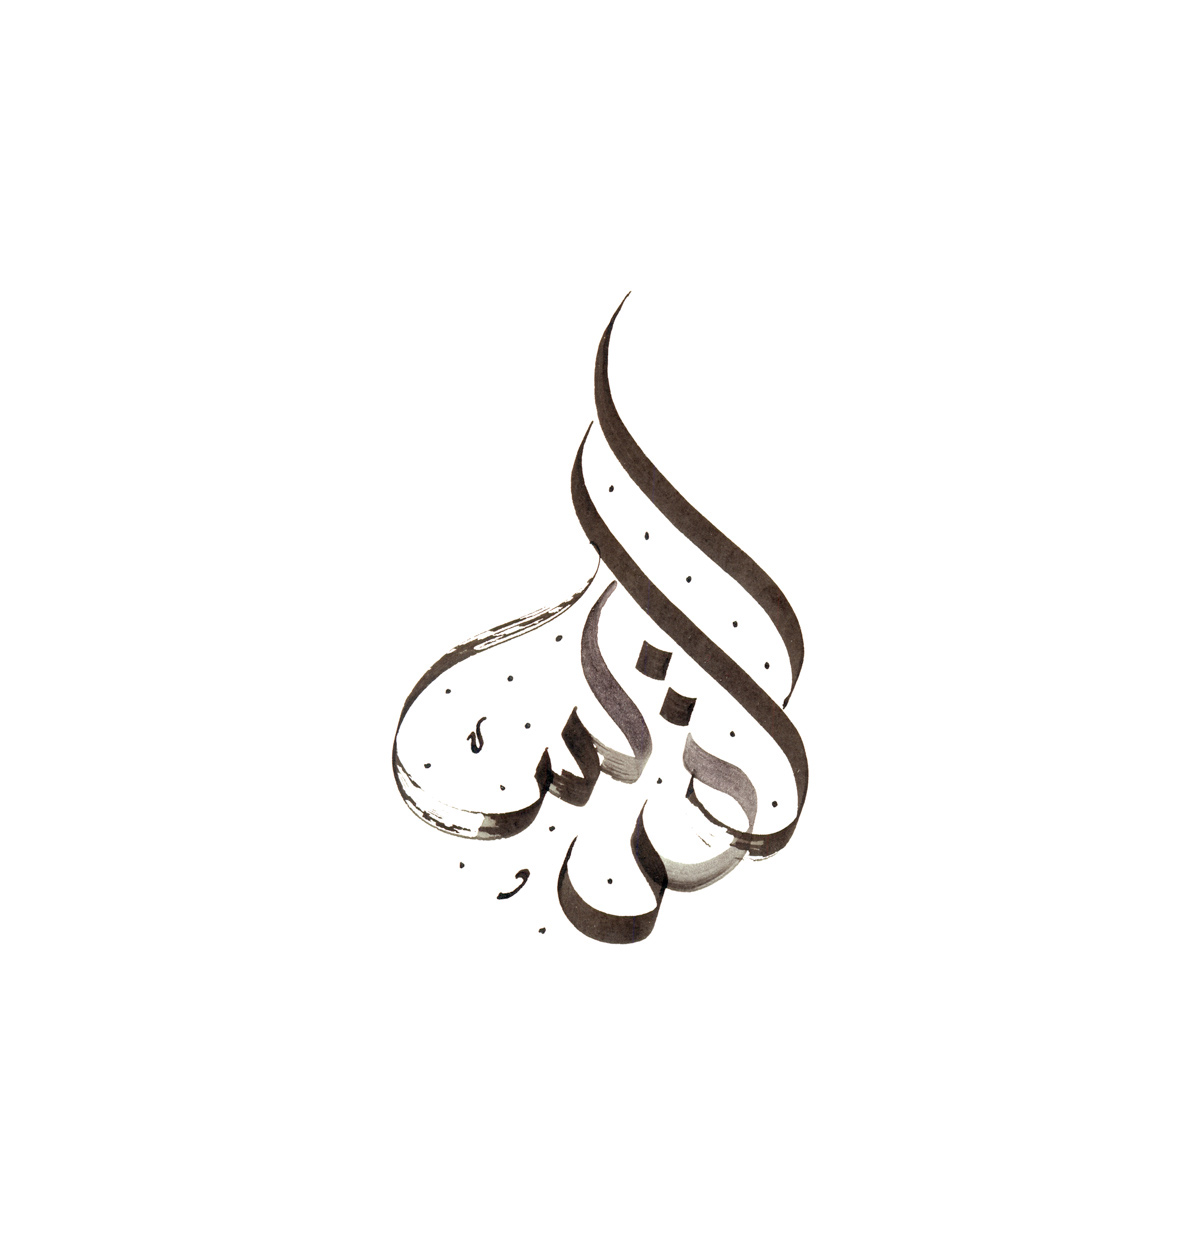 al-quds jerusalem islam muslim palestine dimasov Russia arabic arabiccalligraphy handwritten ink paper